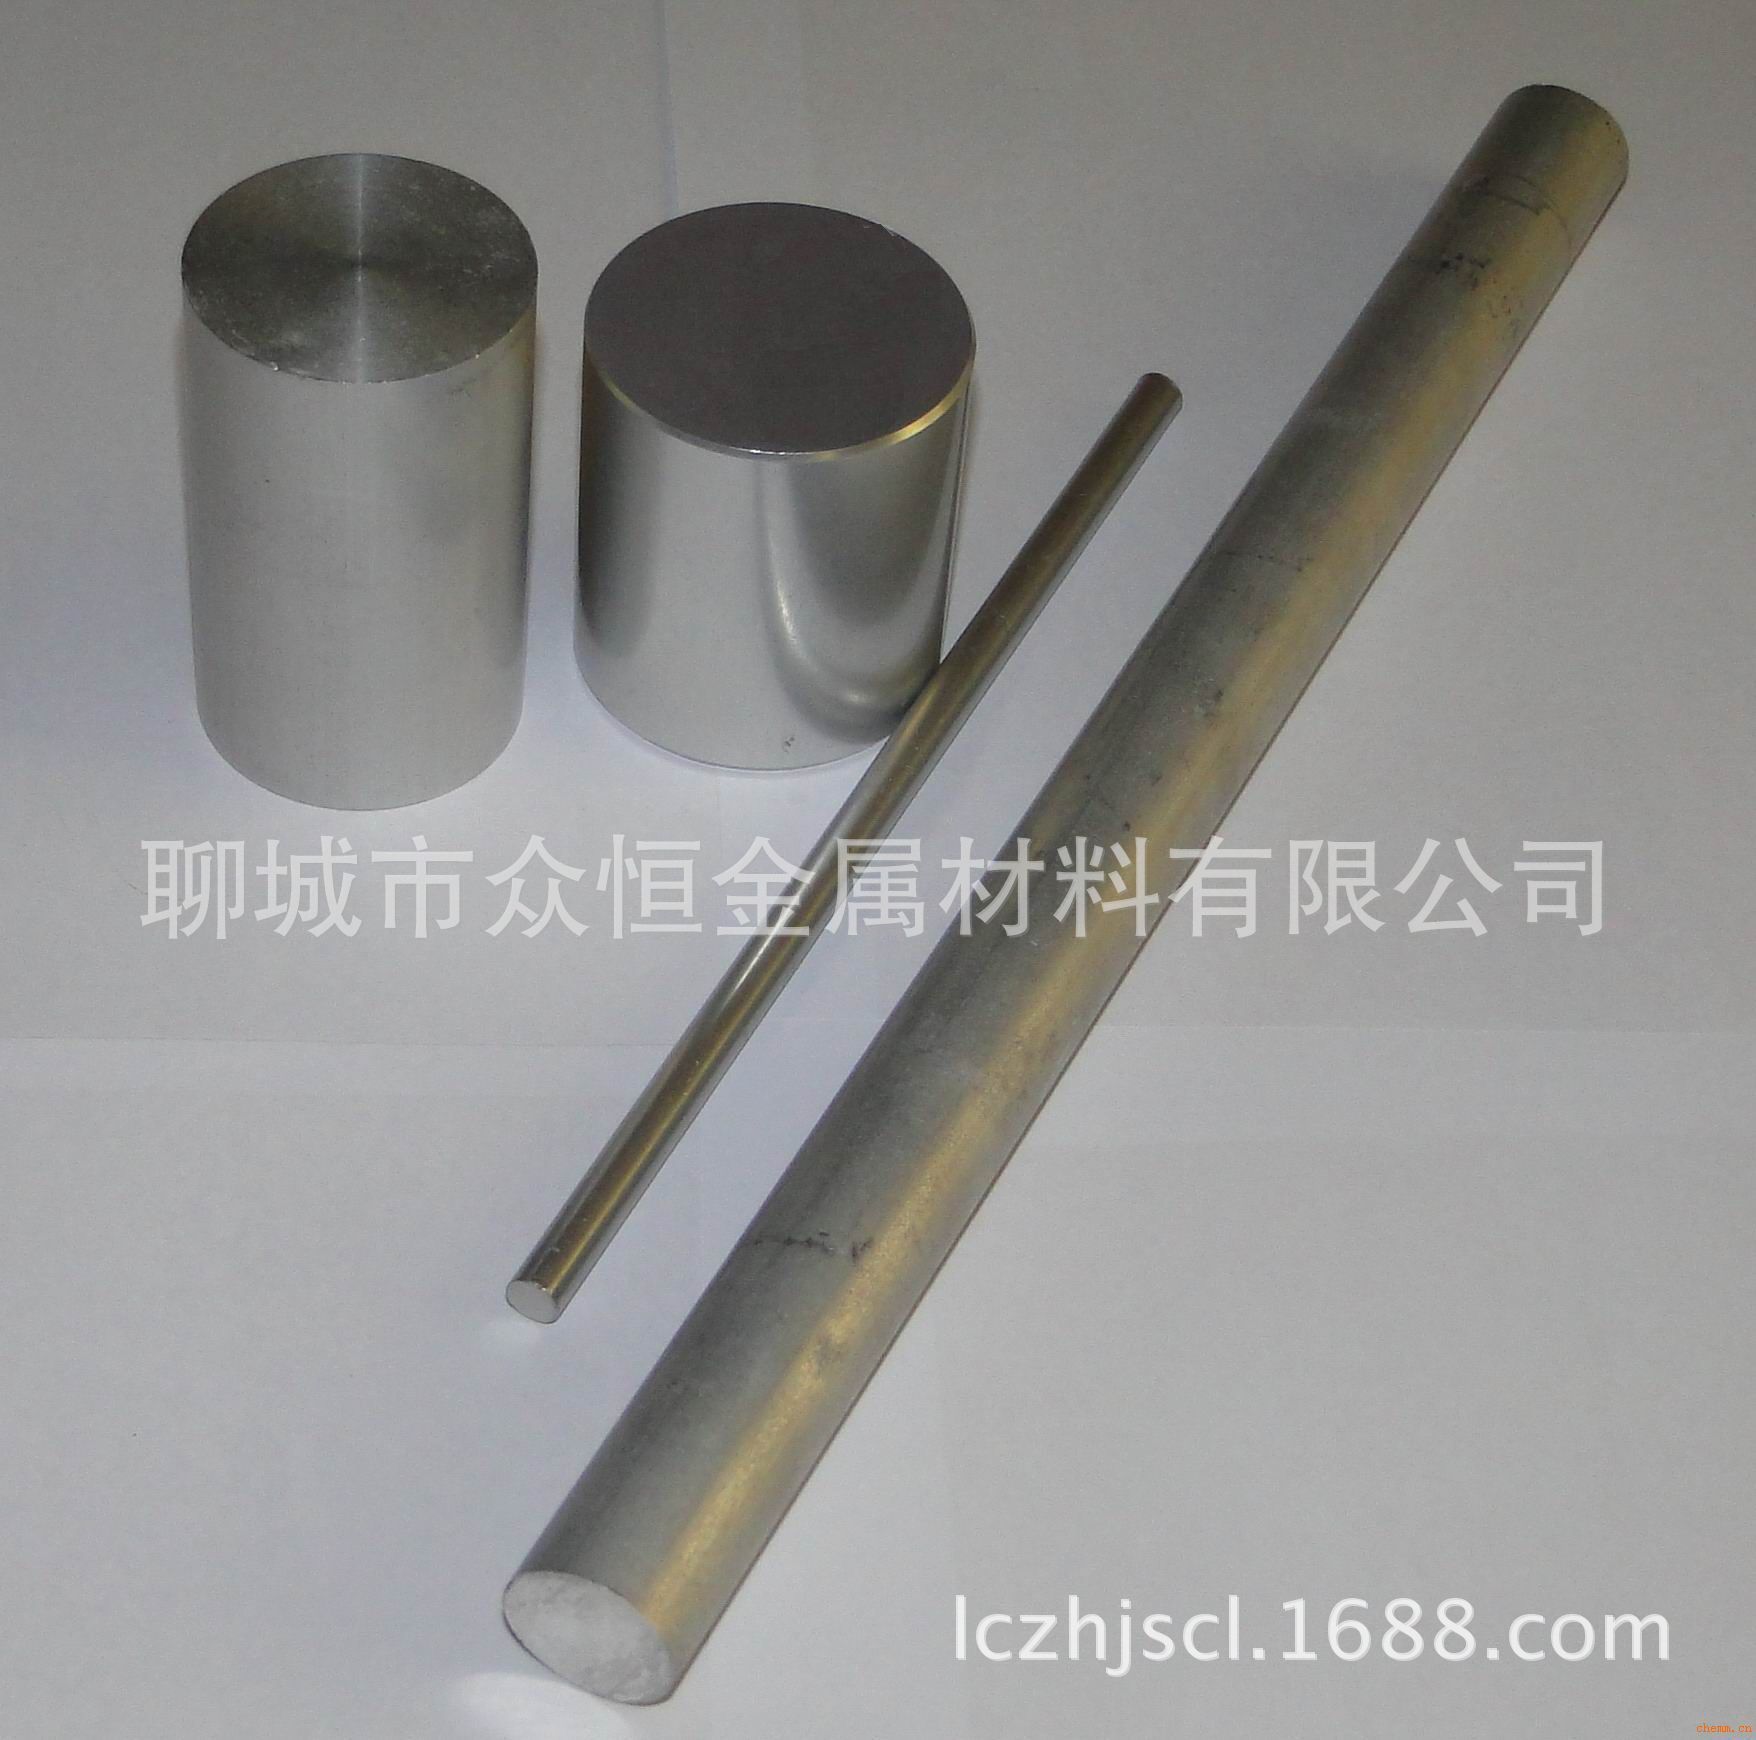 专业铝管 铝棒 铝排 铝板厂家直销批发各种铝材国标环保6063 6061示例图6